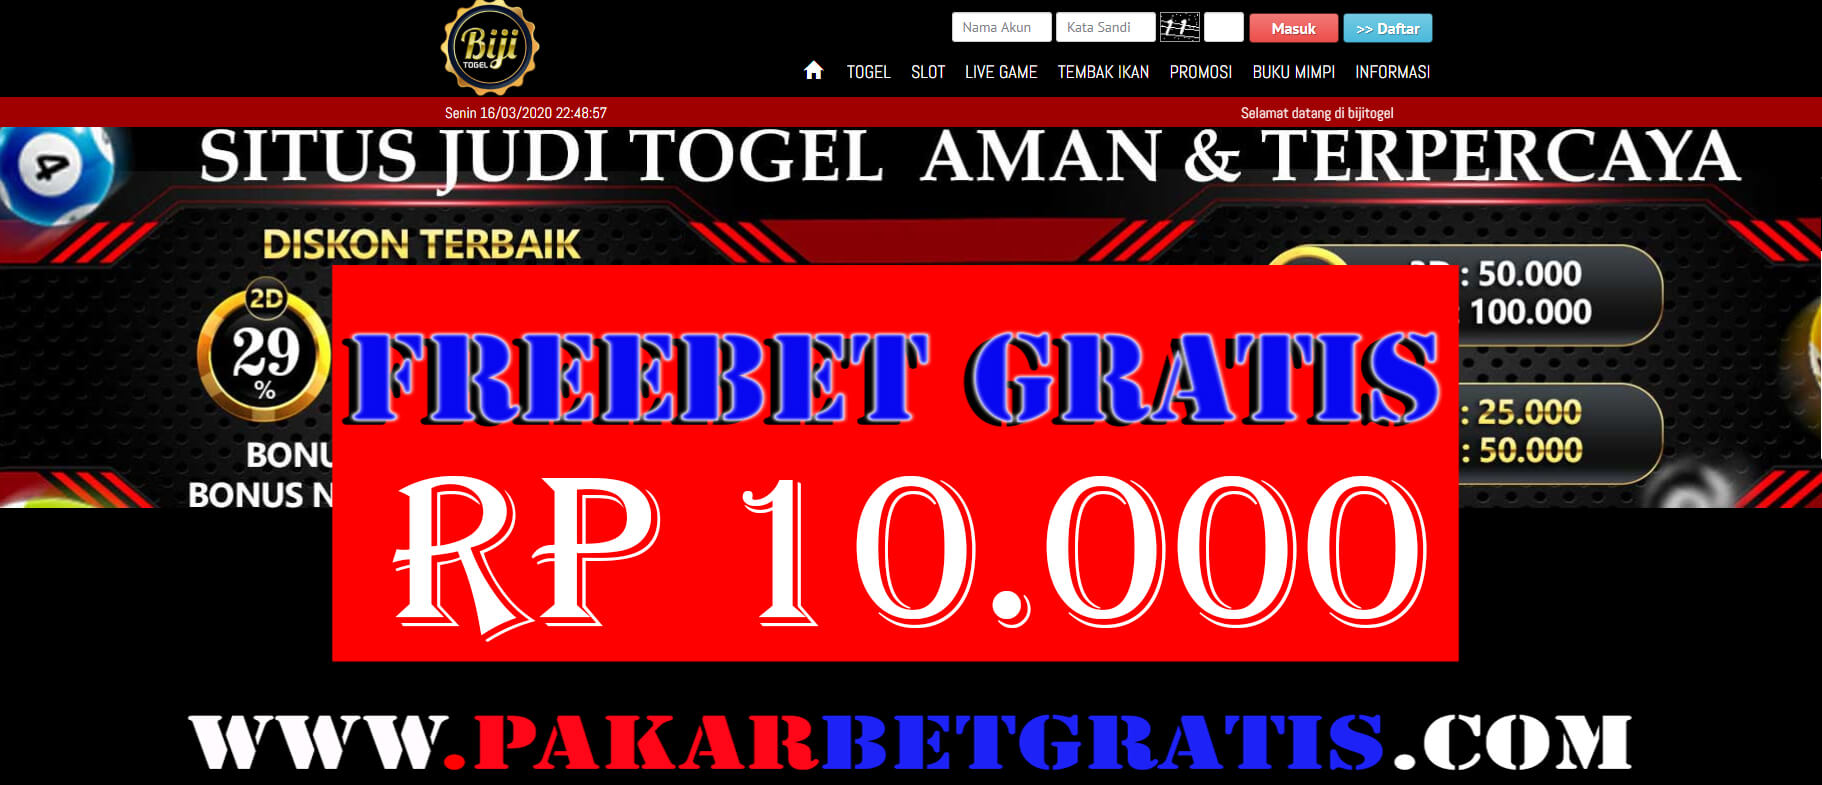 Freebet Gratis BijiTogel Rp 10.000 Tanpa Deposit